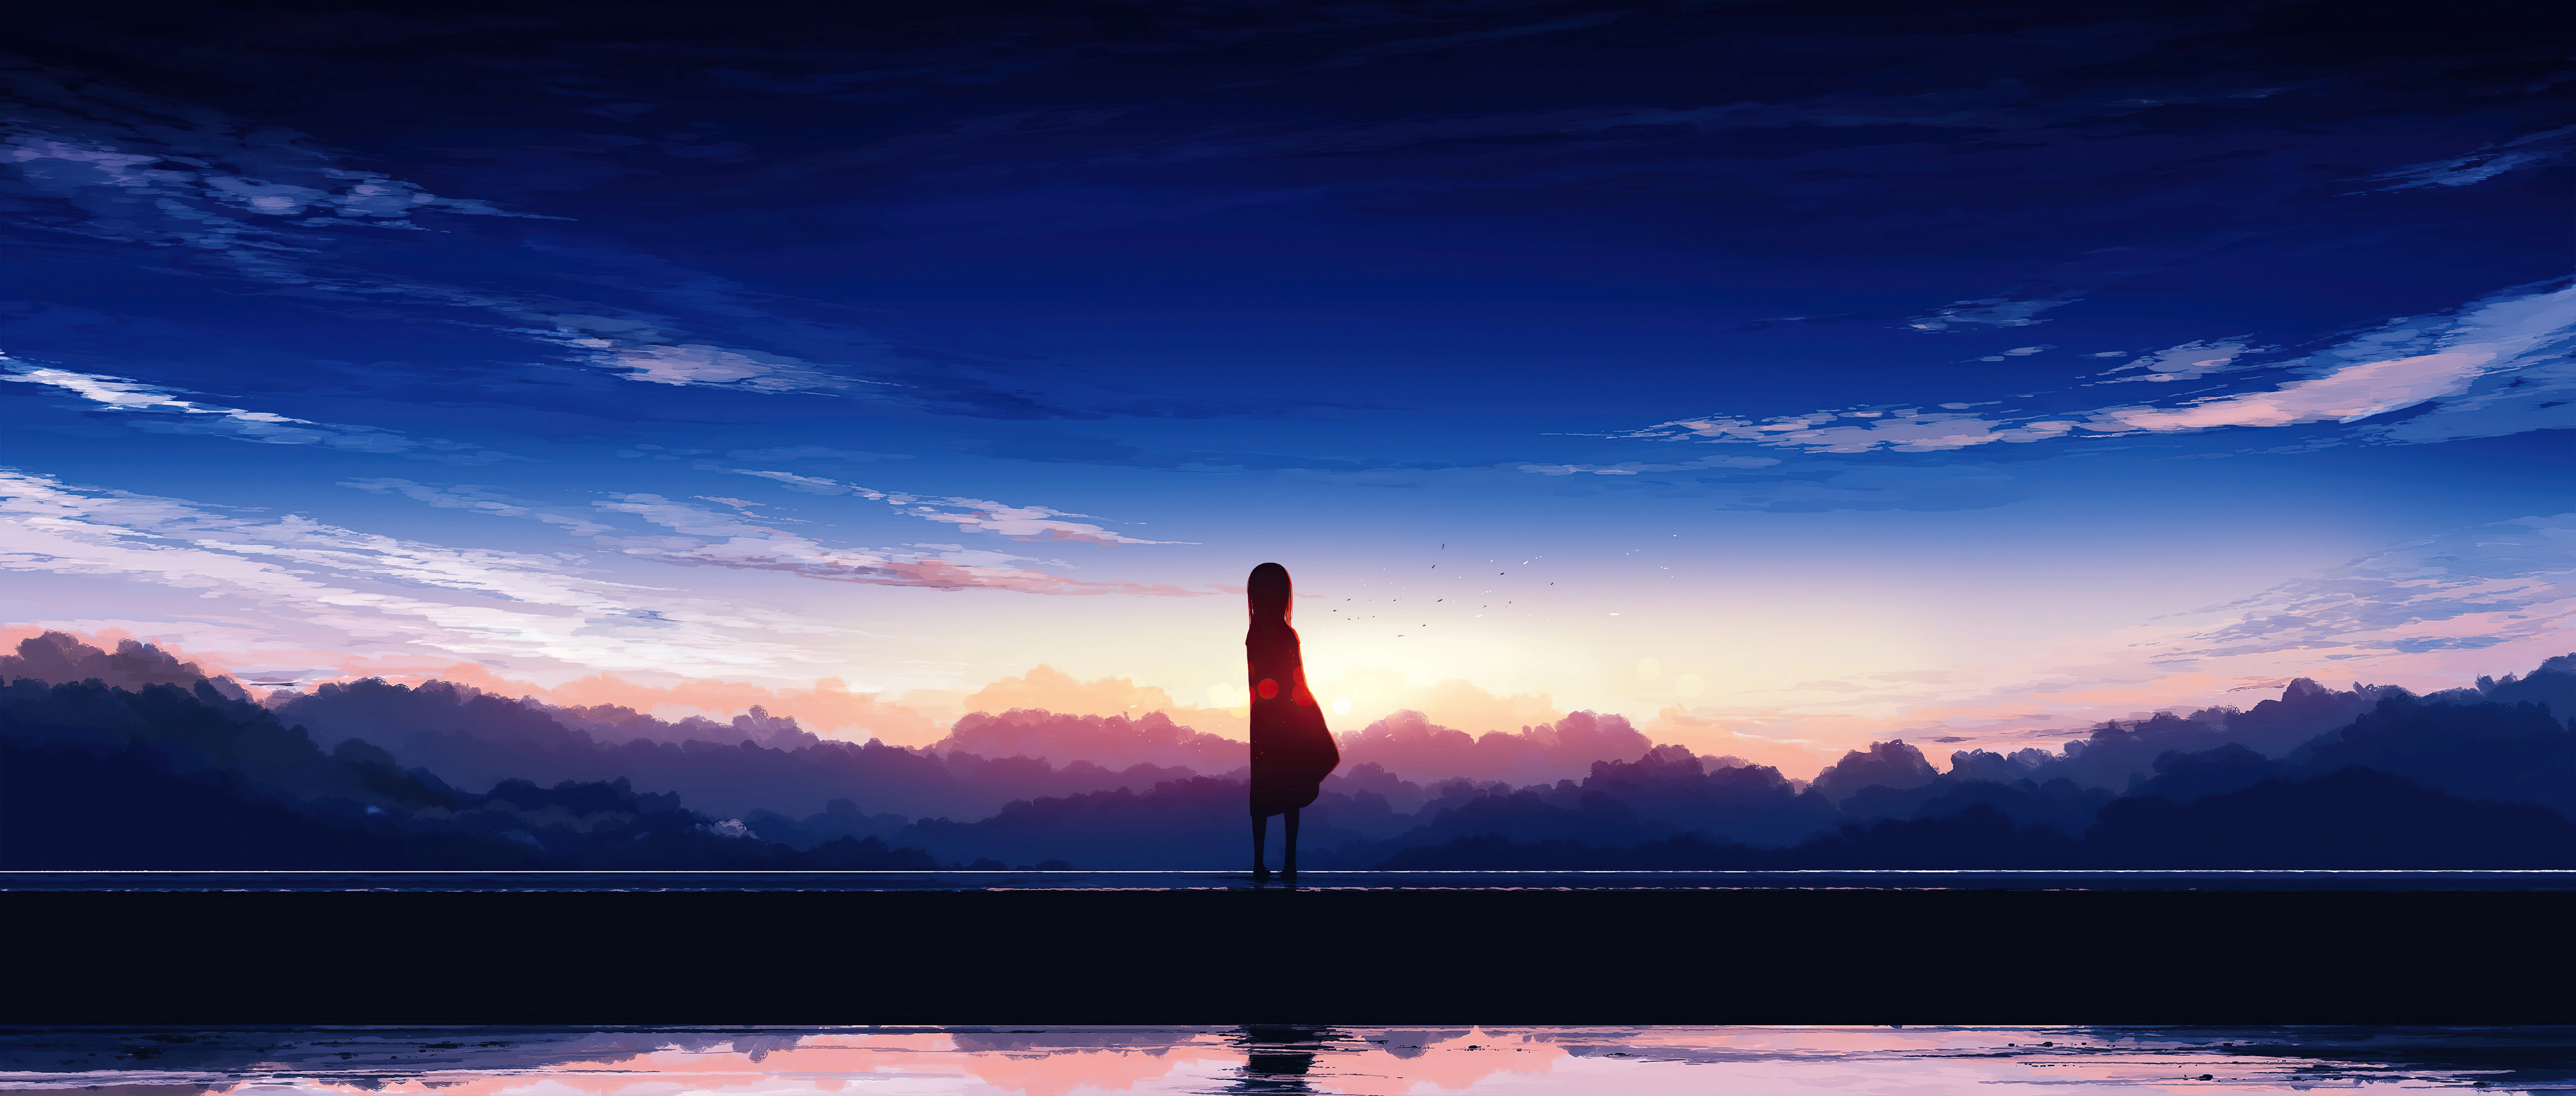 Download free Anime Landscape Dark Sunset Wallpaper - MrWallpaper.com